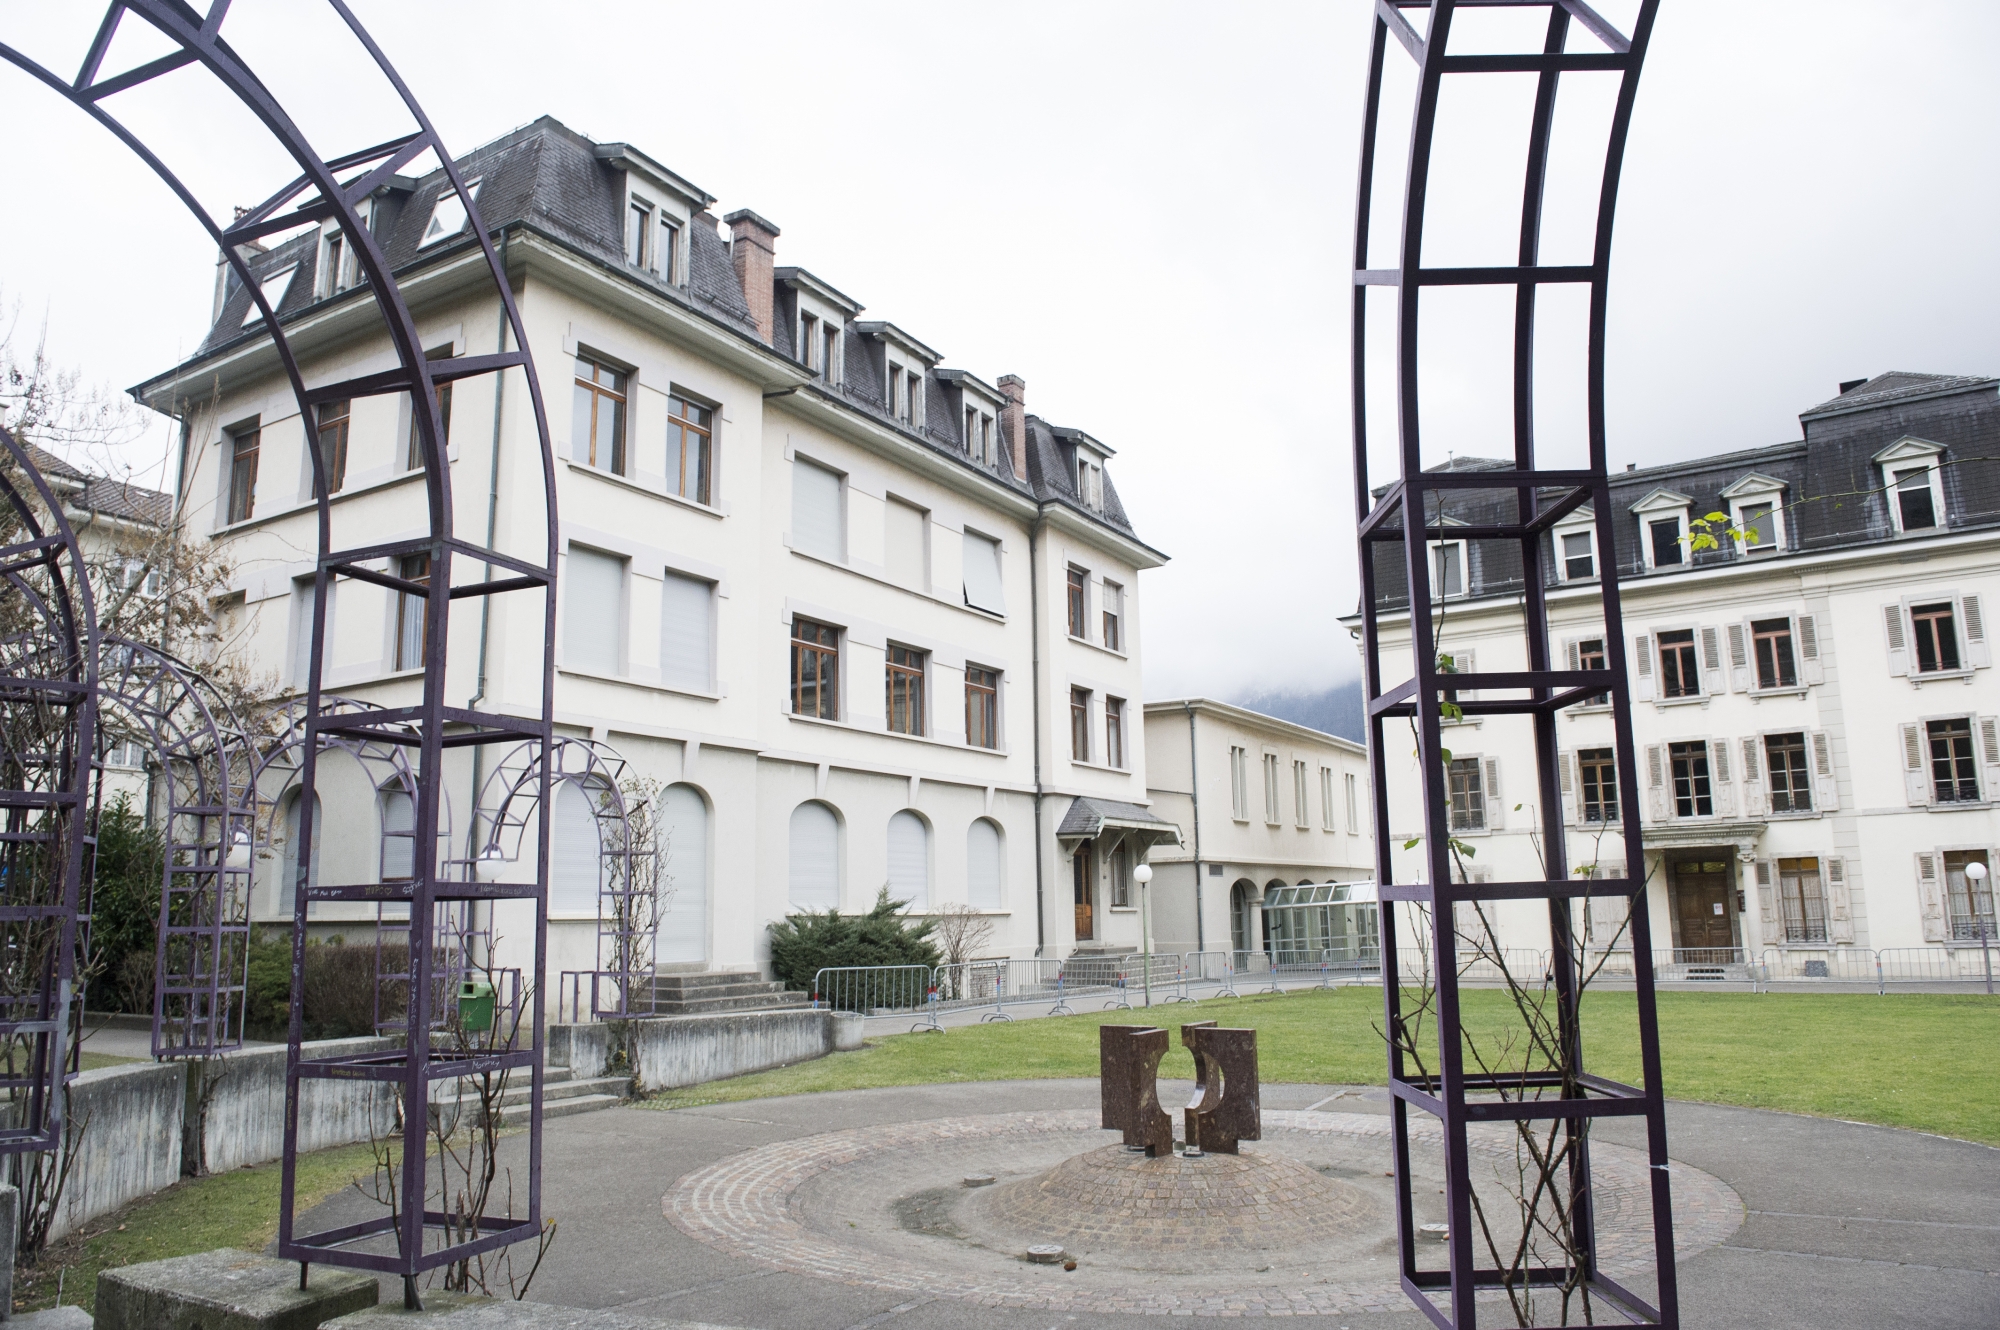 Le Conseil général a accepté un crédit complémentaire pour la rénovation de la villa de la Tuilerie (bâtiment sur la droite). 